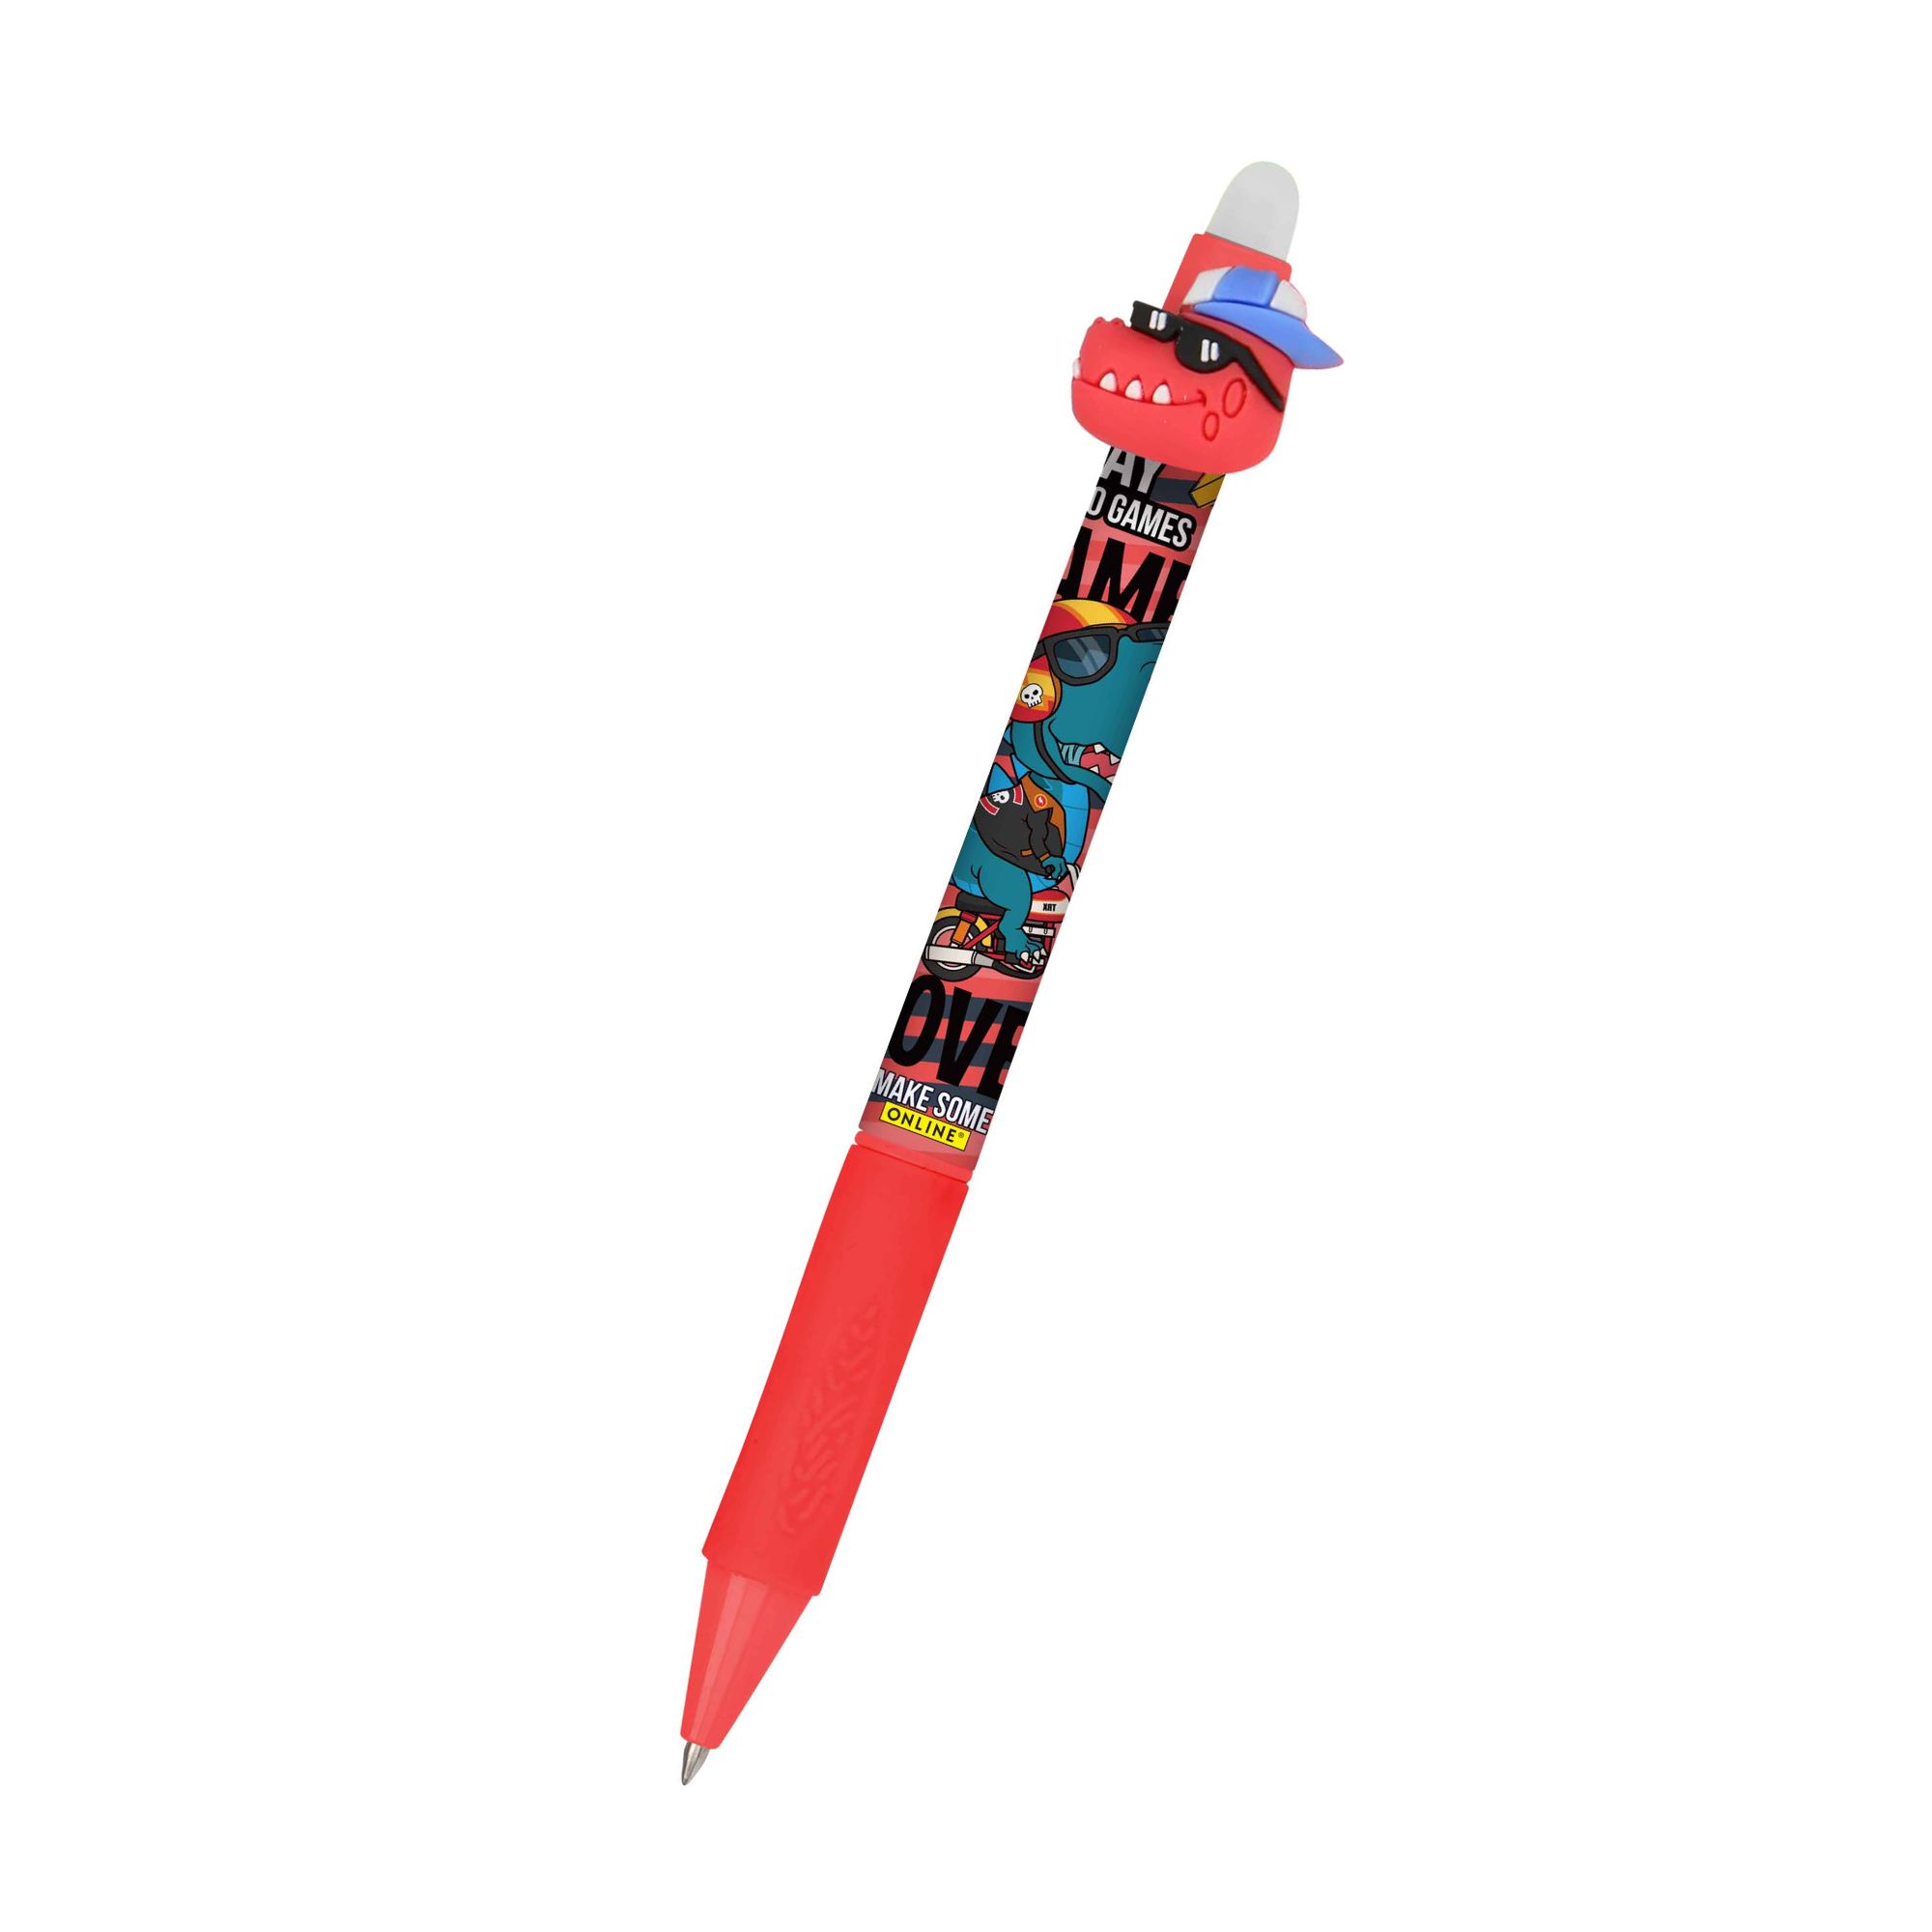 Unser radierbarer Gelschreiber magiXX Fun der Serie Cool für Kinder mit spannenden Designs